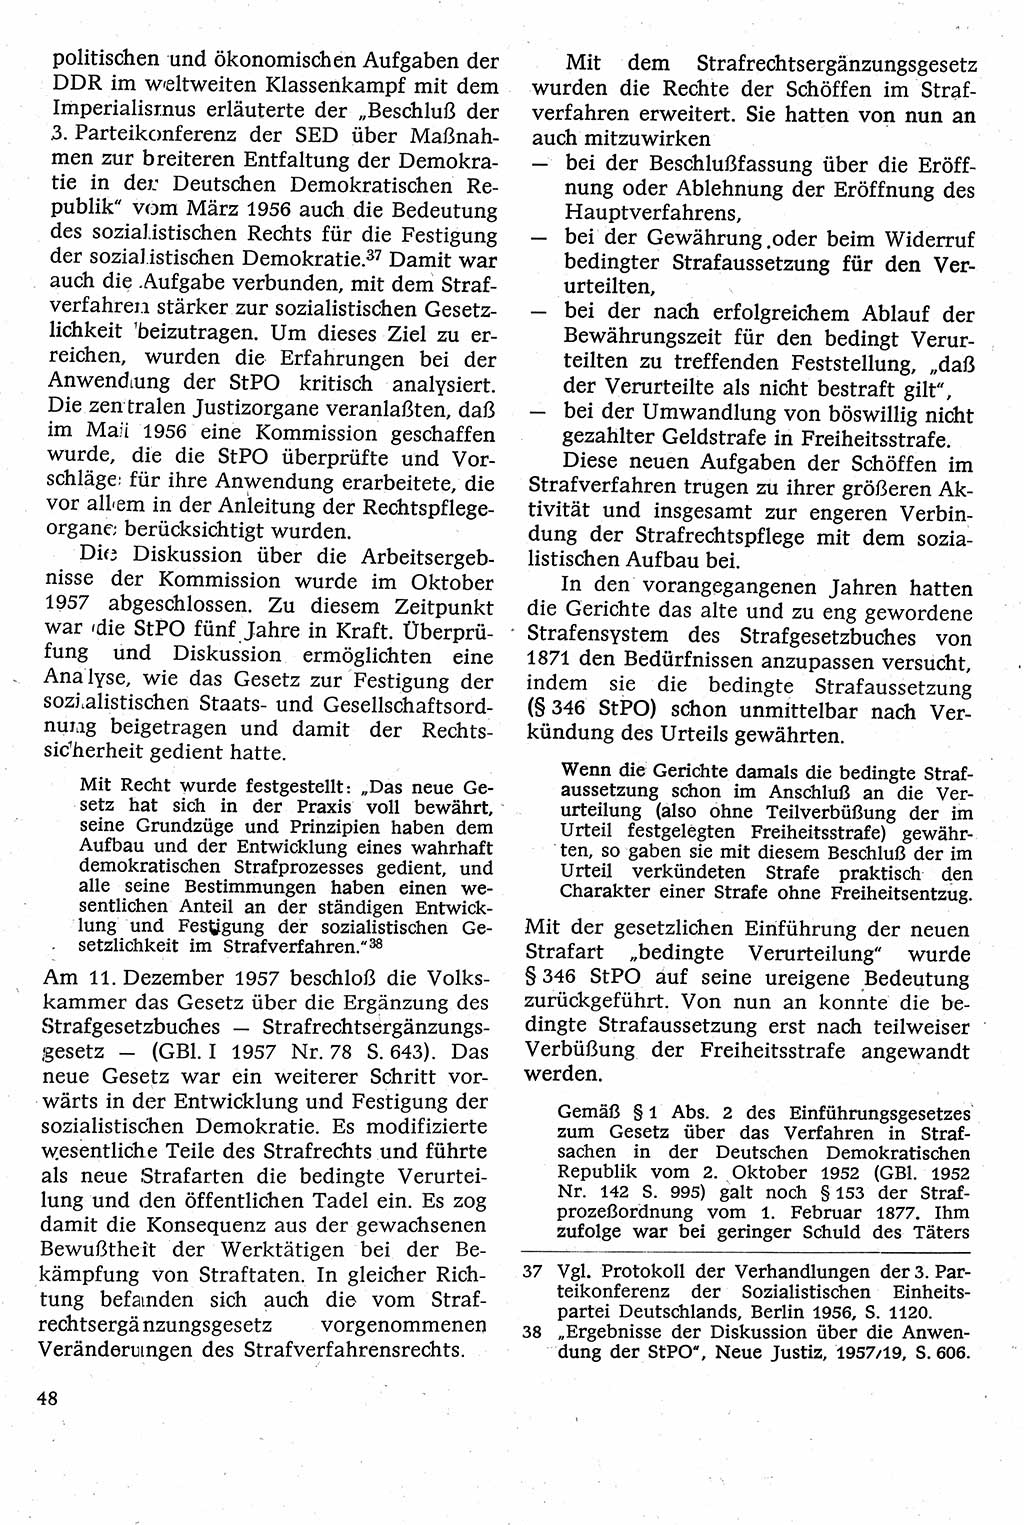 Strafverfahrensrecht [Deutsche Demokratische Republik (DDR)], Lehrbuch 1982, Seite 48 (Strafverf.-R. DDR Lb. 1982, S. 48)